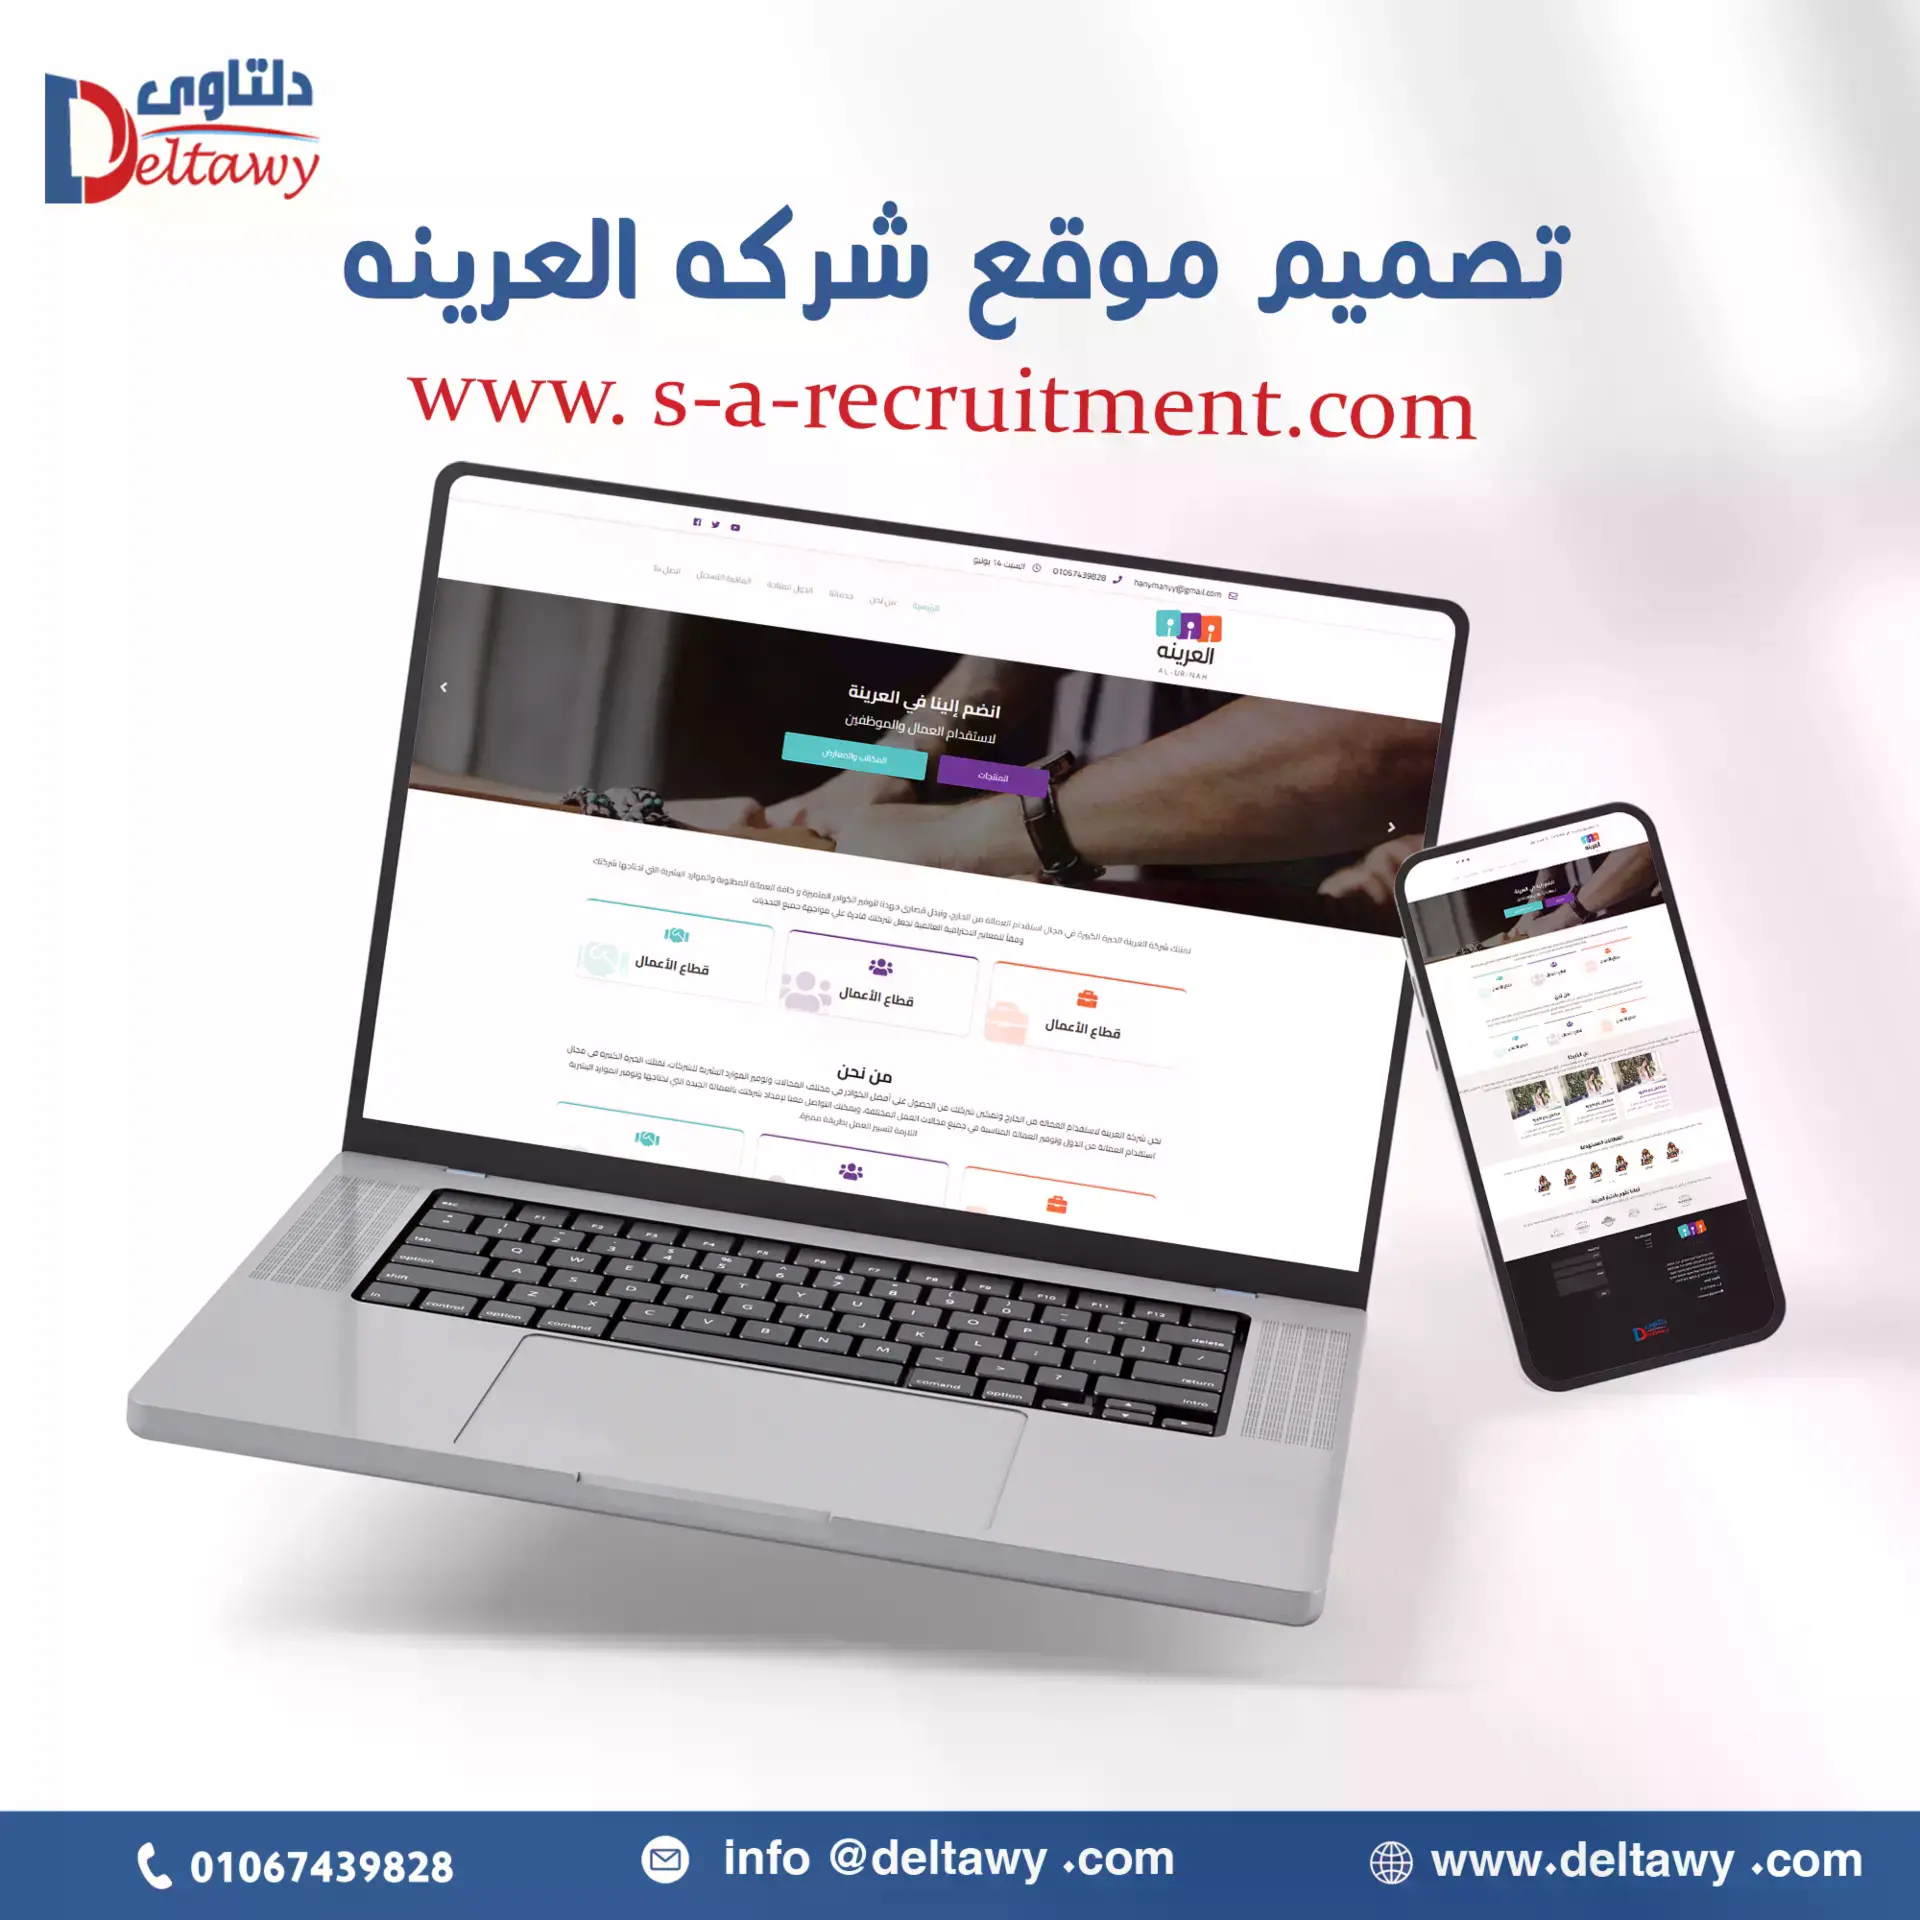 s-a-recruitment.com